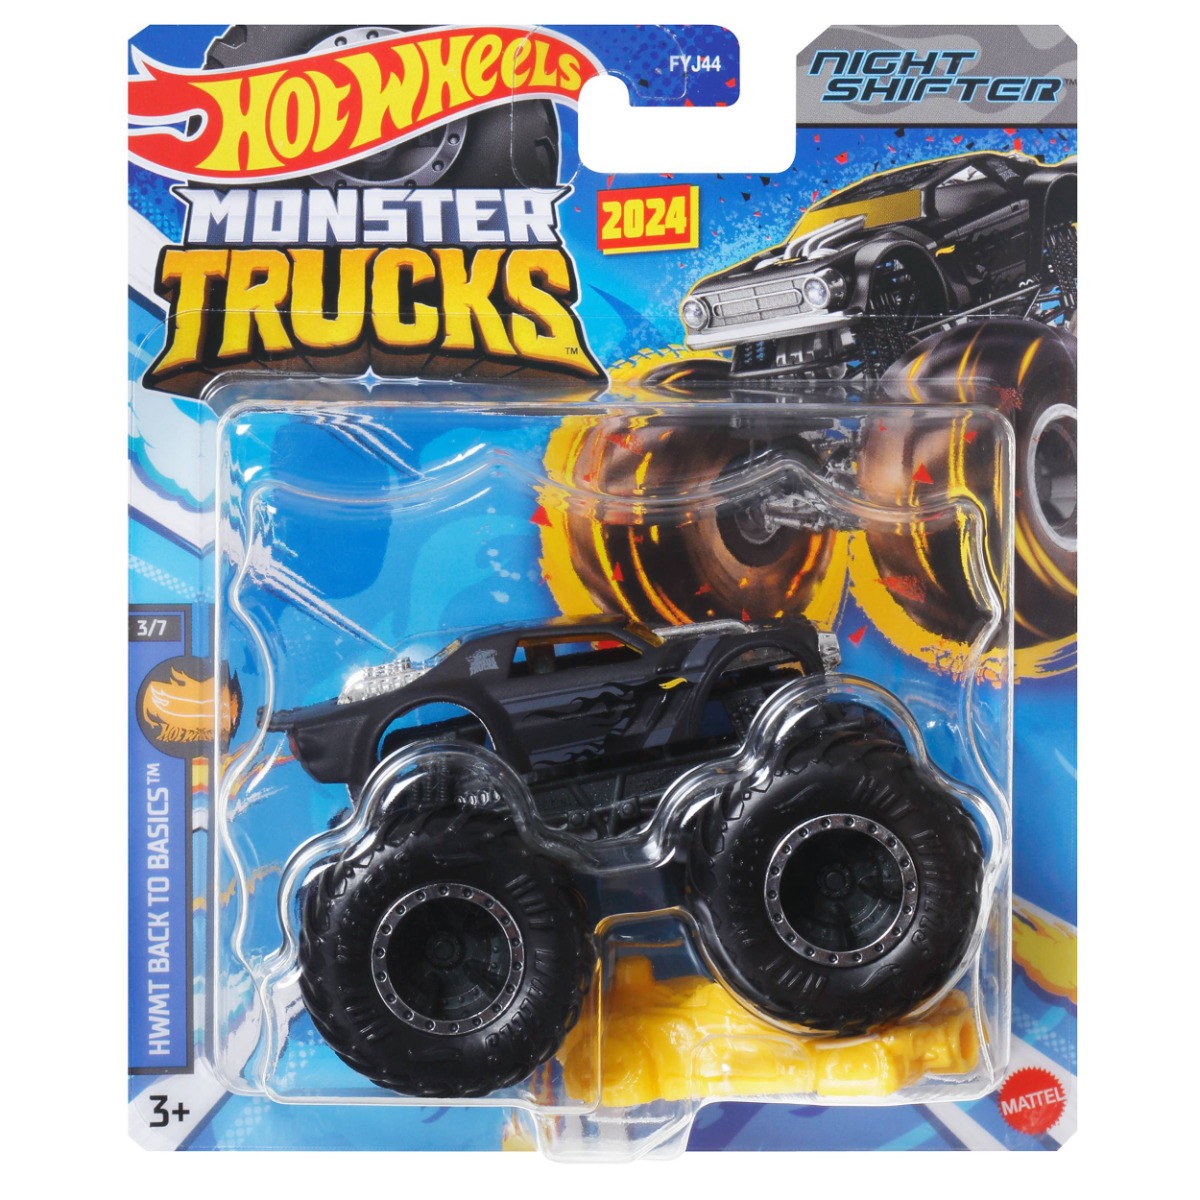 Masinuta Hot Wheels Monster Truck, Night Shifter, HTM40